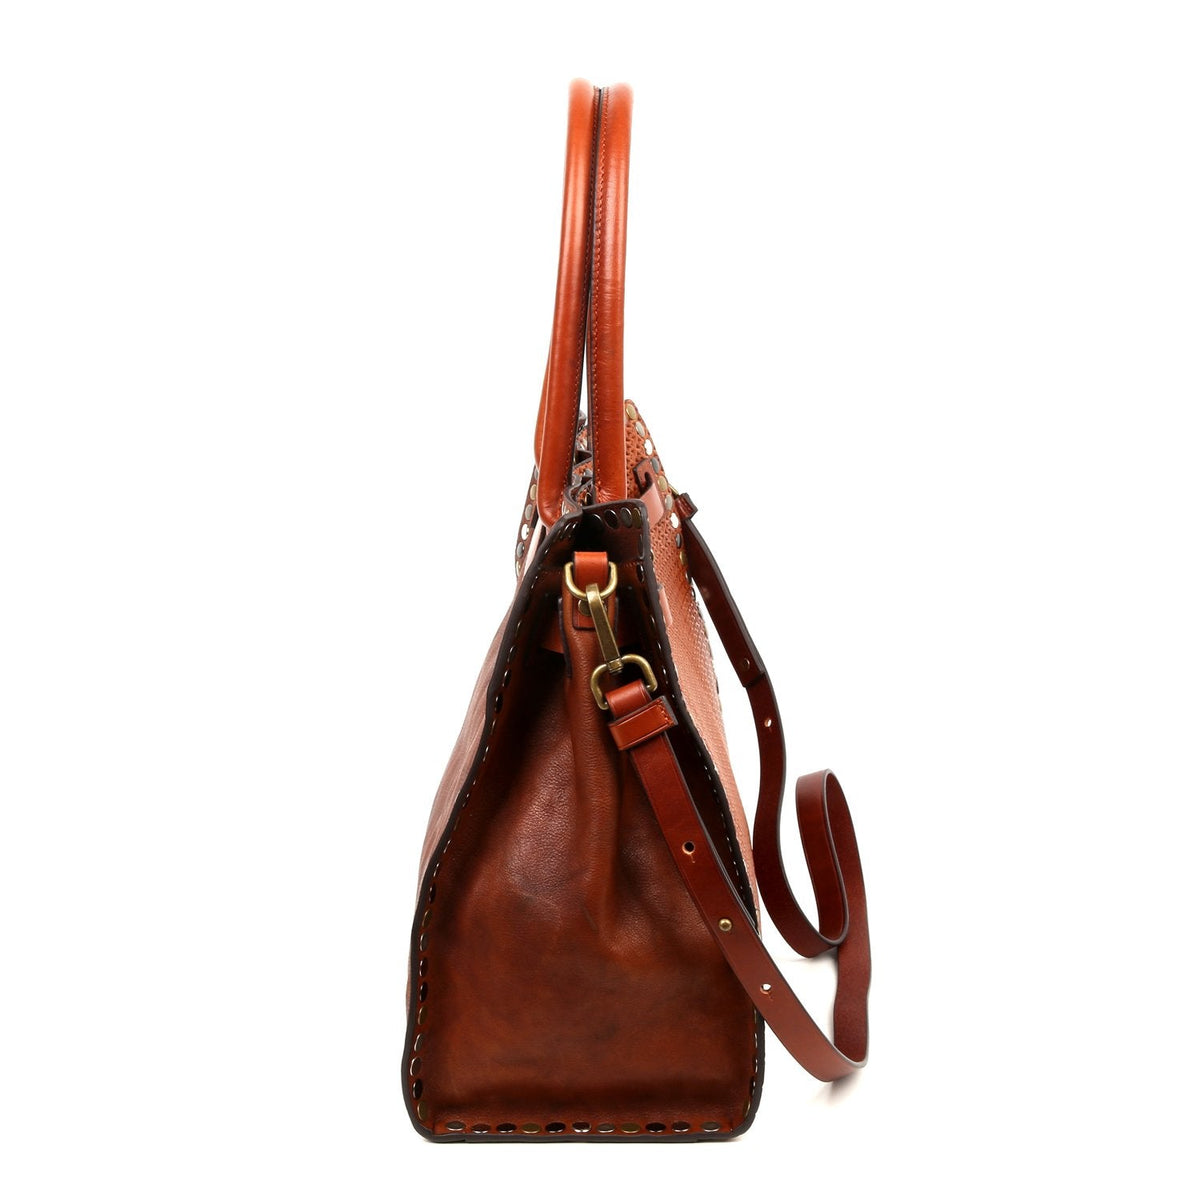 Bags & Luggage - Women's Bags - Top-Handle Bags Westland Satchel